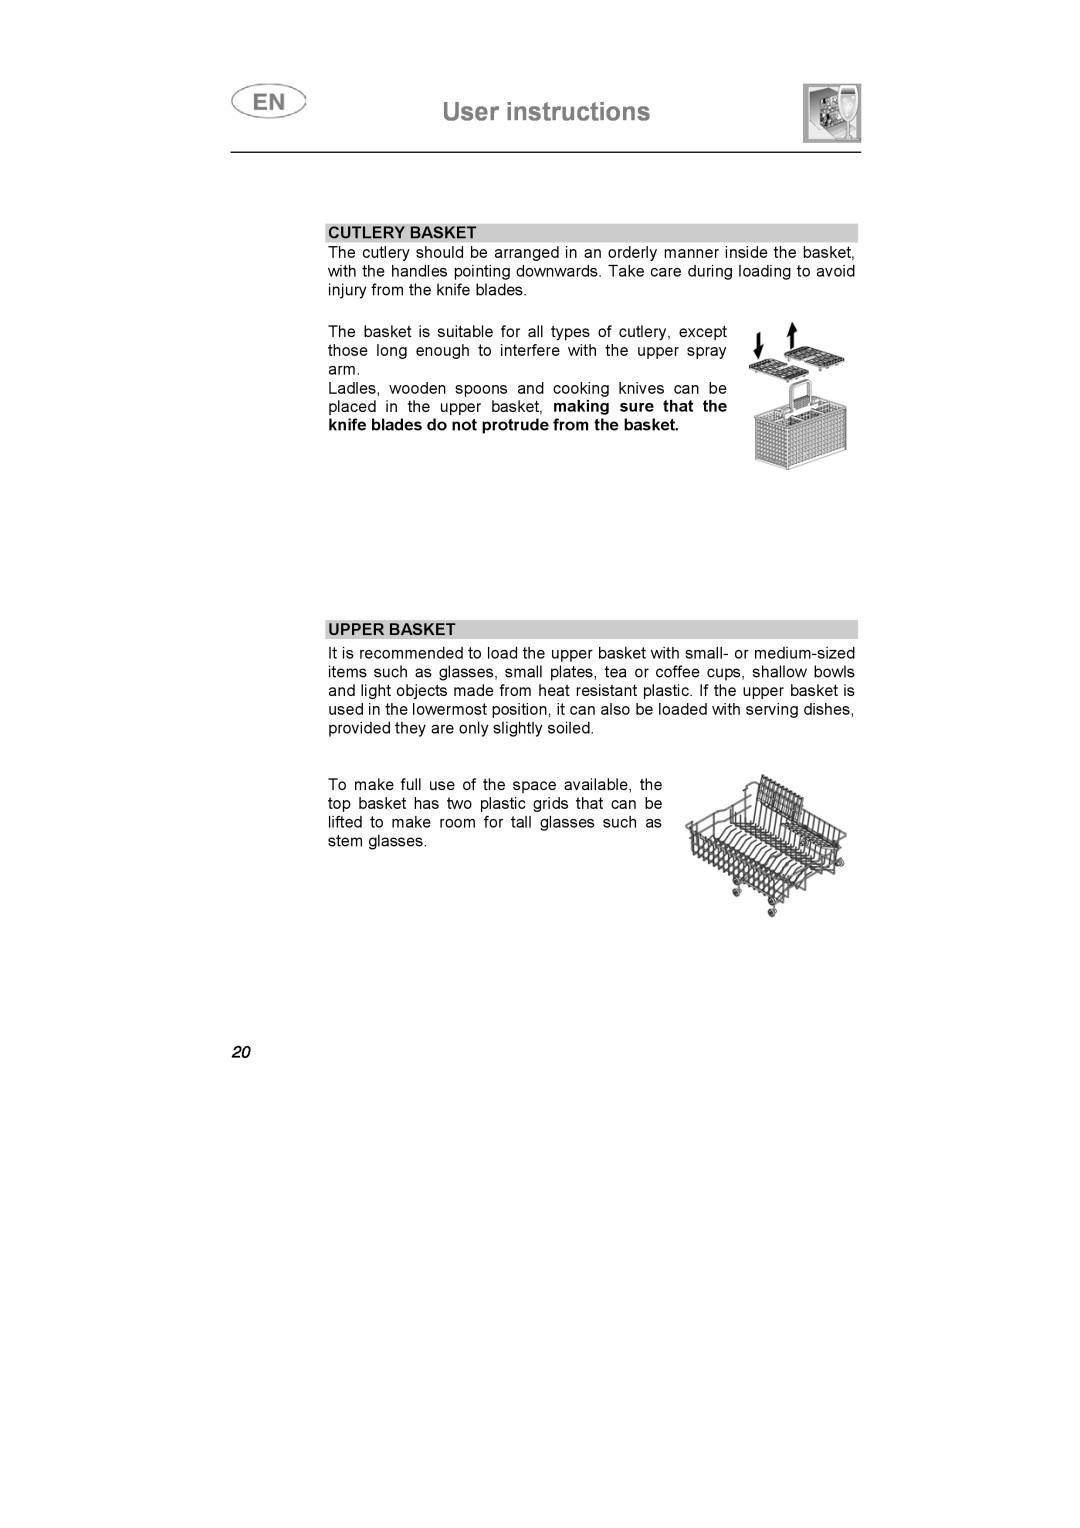 Smeg PL60XME instruction manual User instructions, Cutlery Basket, Upper Basket 